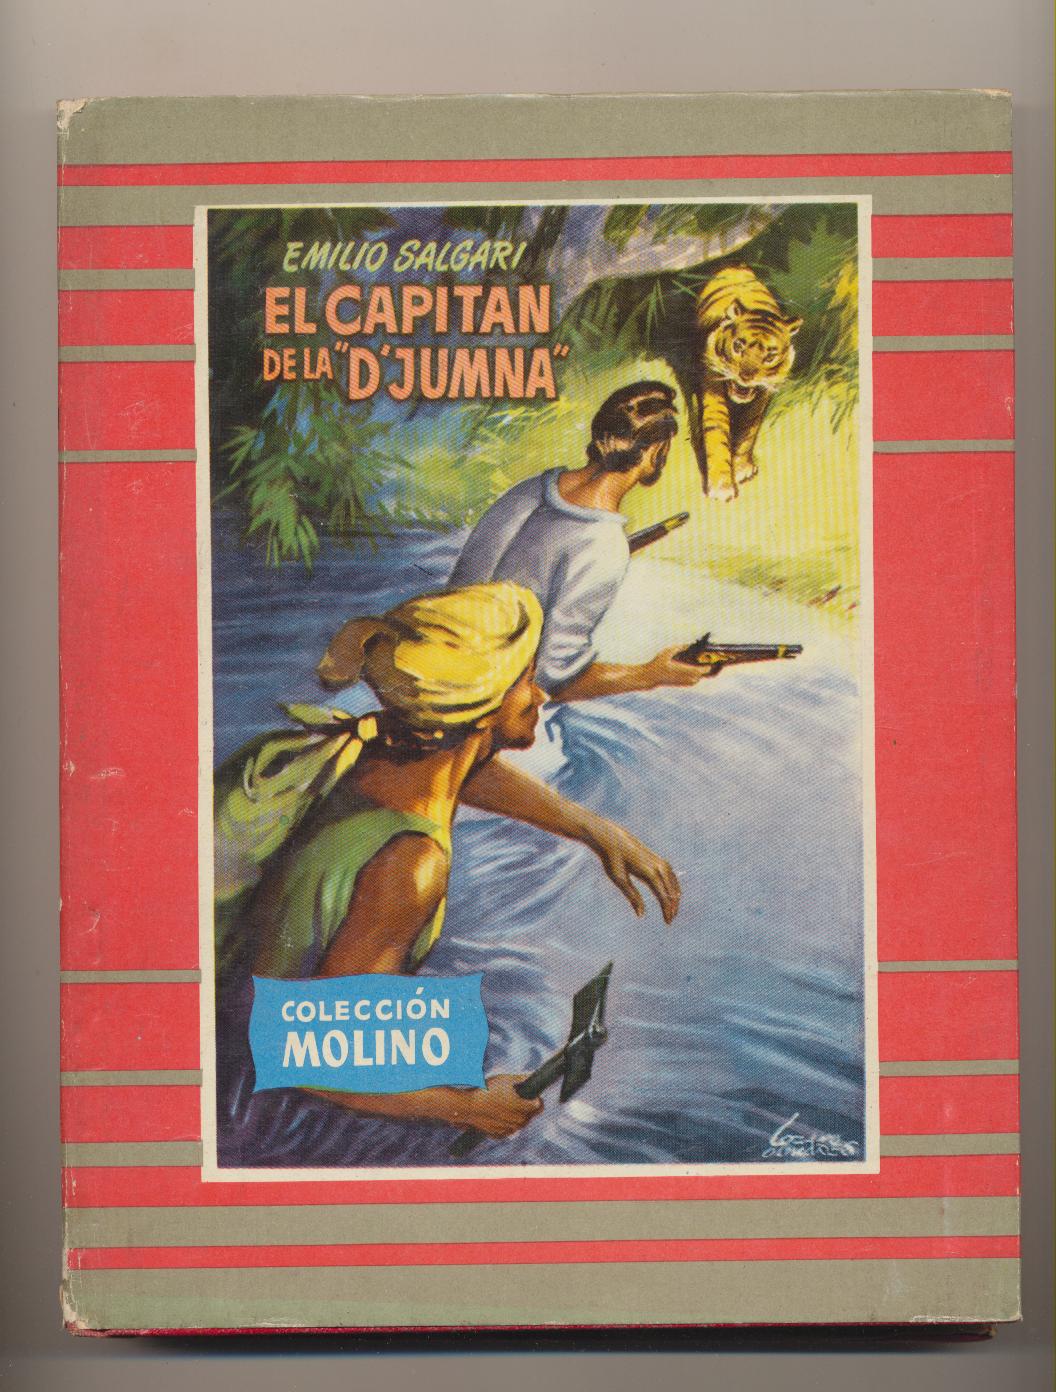 Emilio Salgari. El Capitán de la D´Jumna. Colección Molino nº 35. 1956